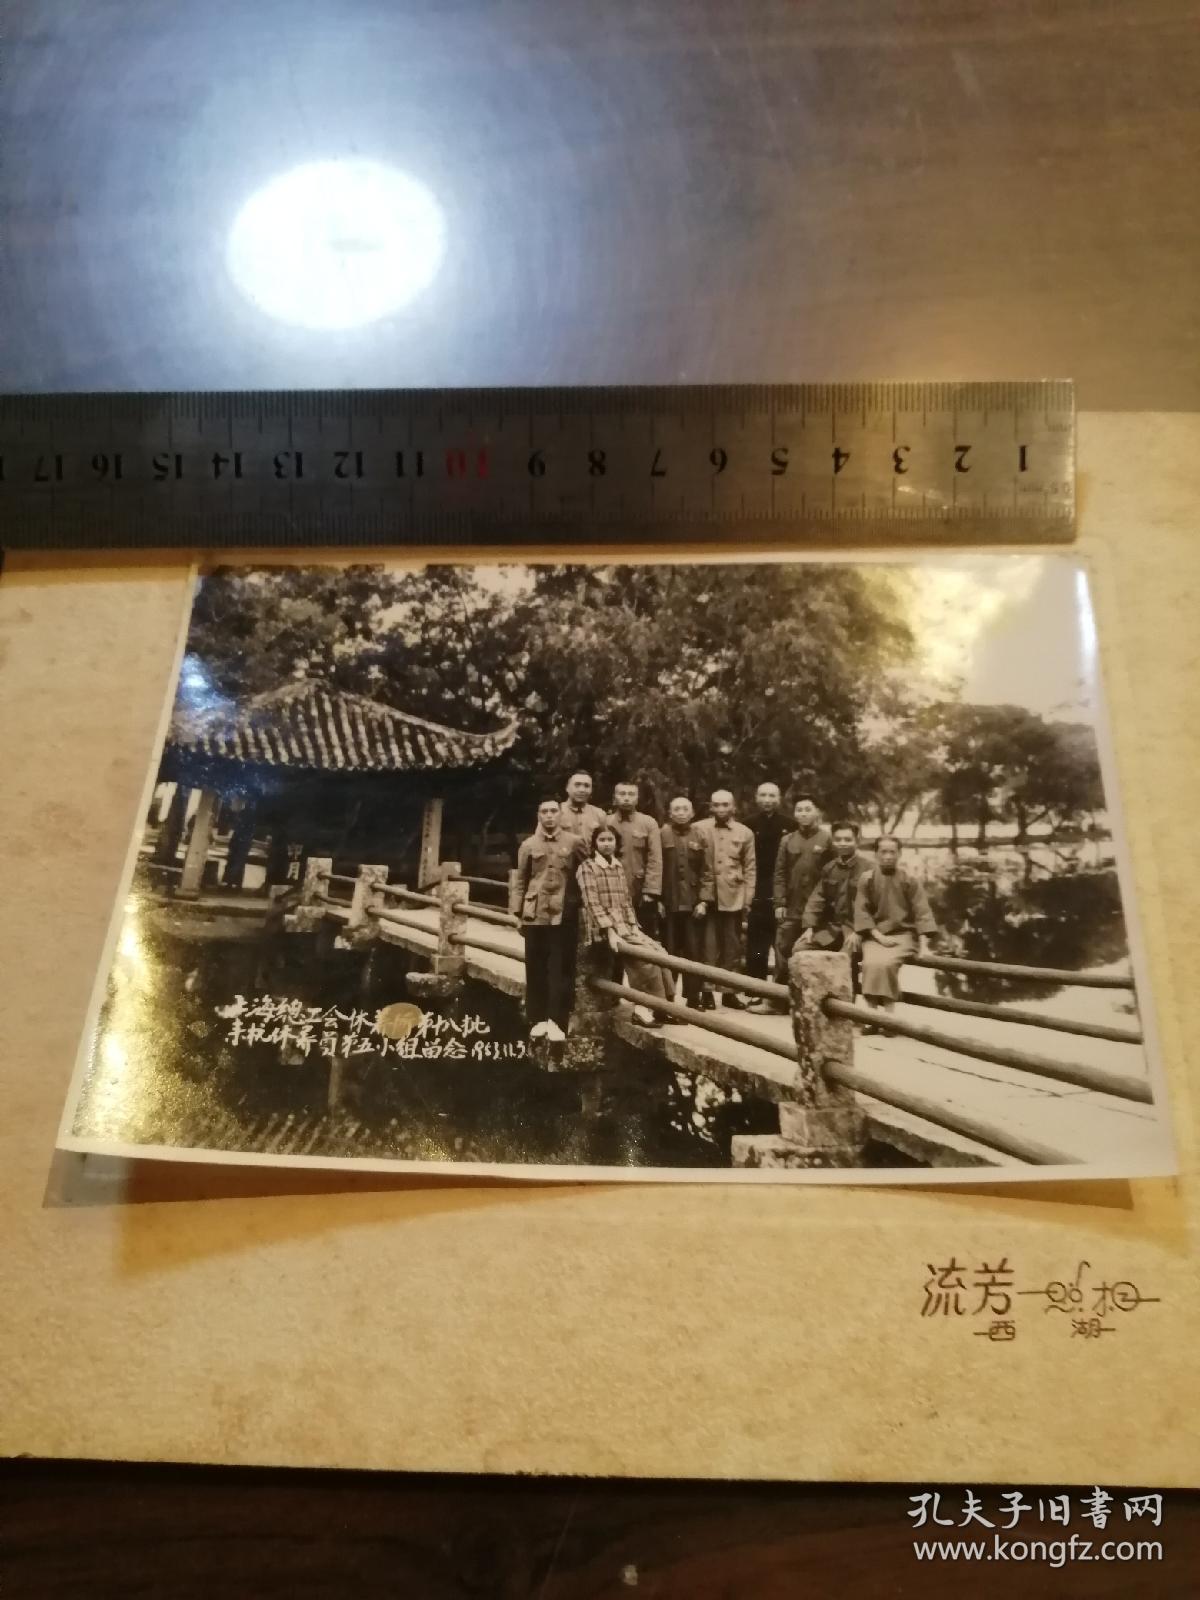 1953年  上海总工会休养所第十八批来杭休养员第五小组留念  老照片   西湖流芳照相